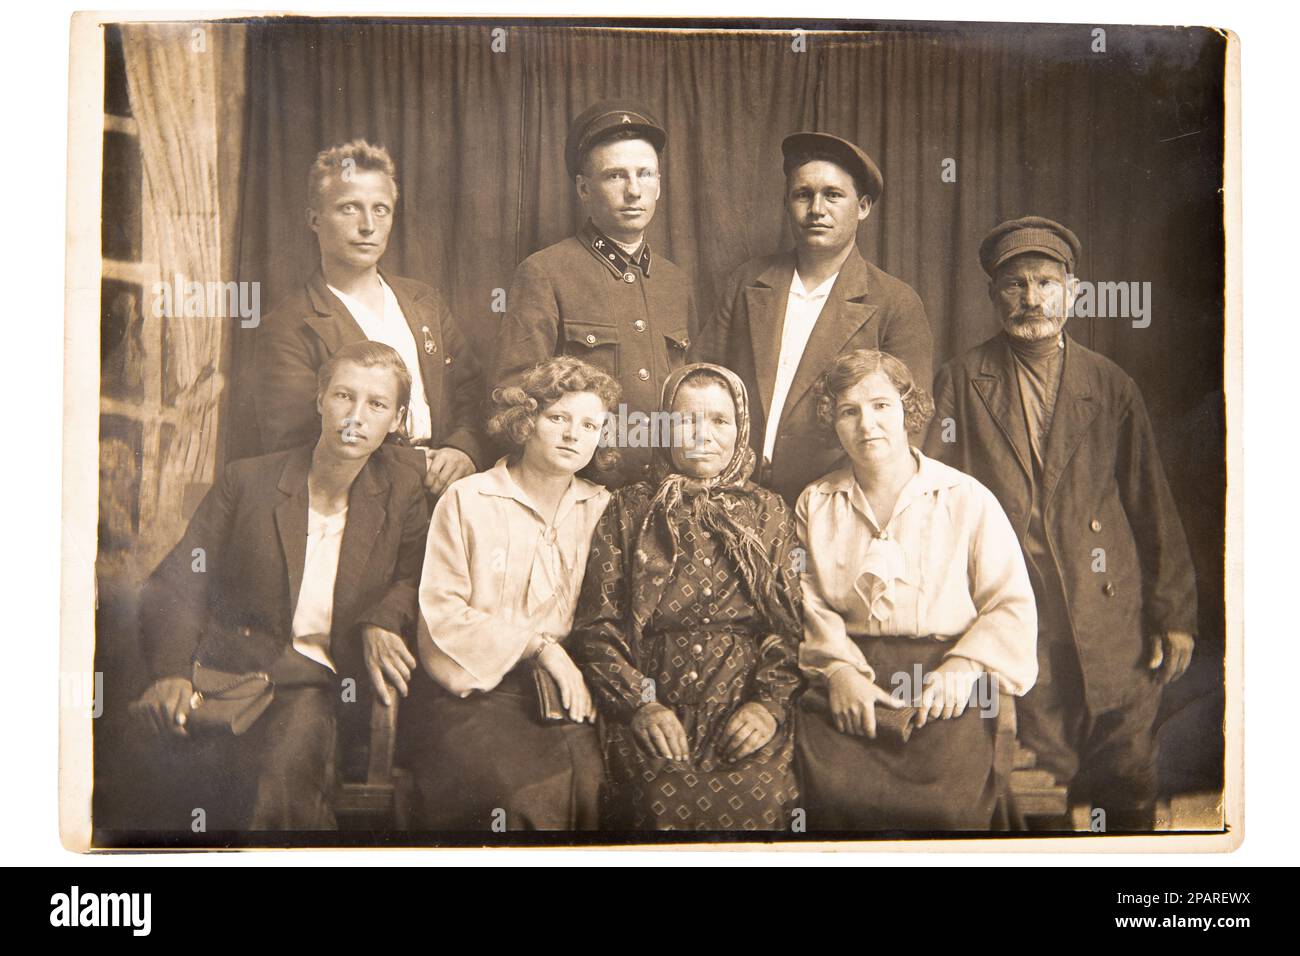 Retro-Familienfoto von 1940. Drei Generationen weißer Familie, Sowjetunion. Der älteste Mann wurde 1874 geboren. Klassischer Schwarz-Weiß-Schnappschuss Stockfoto